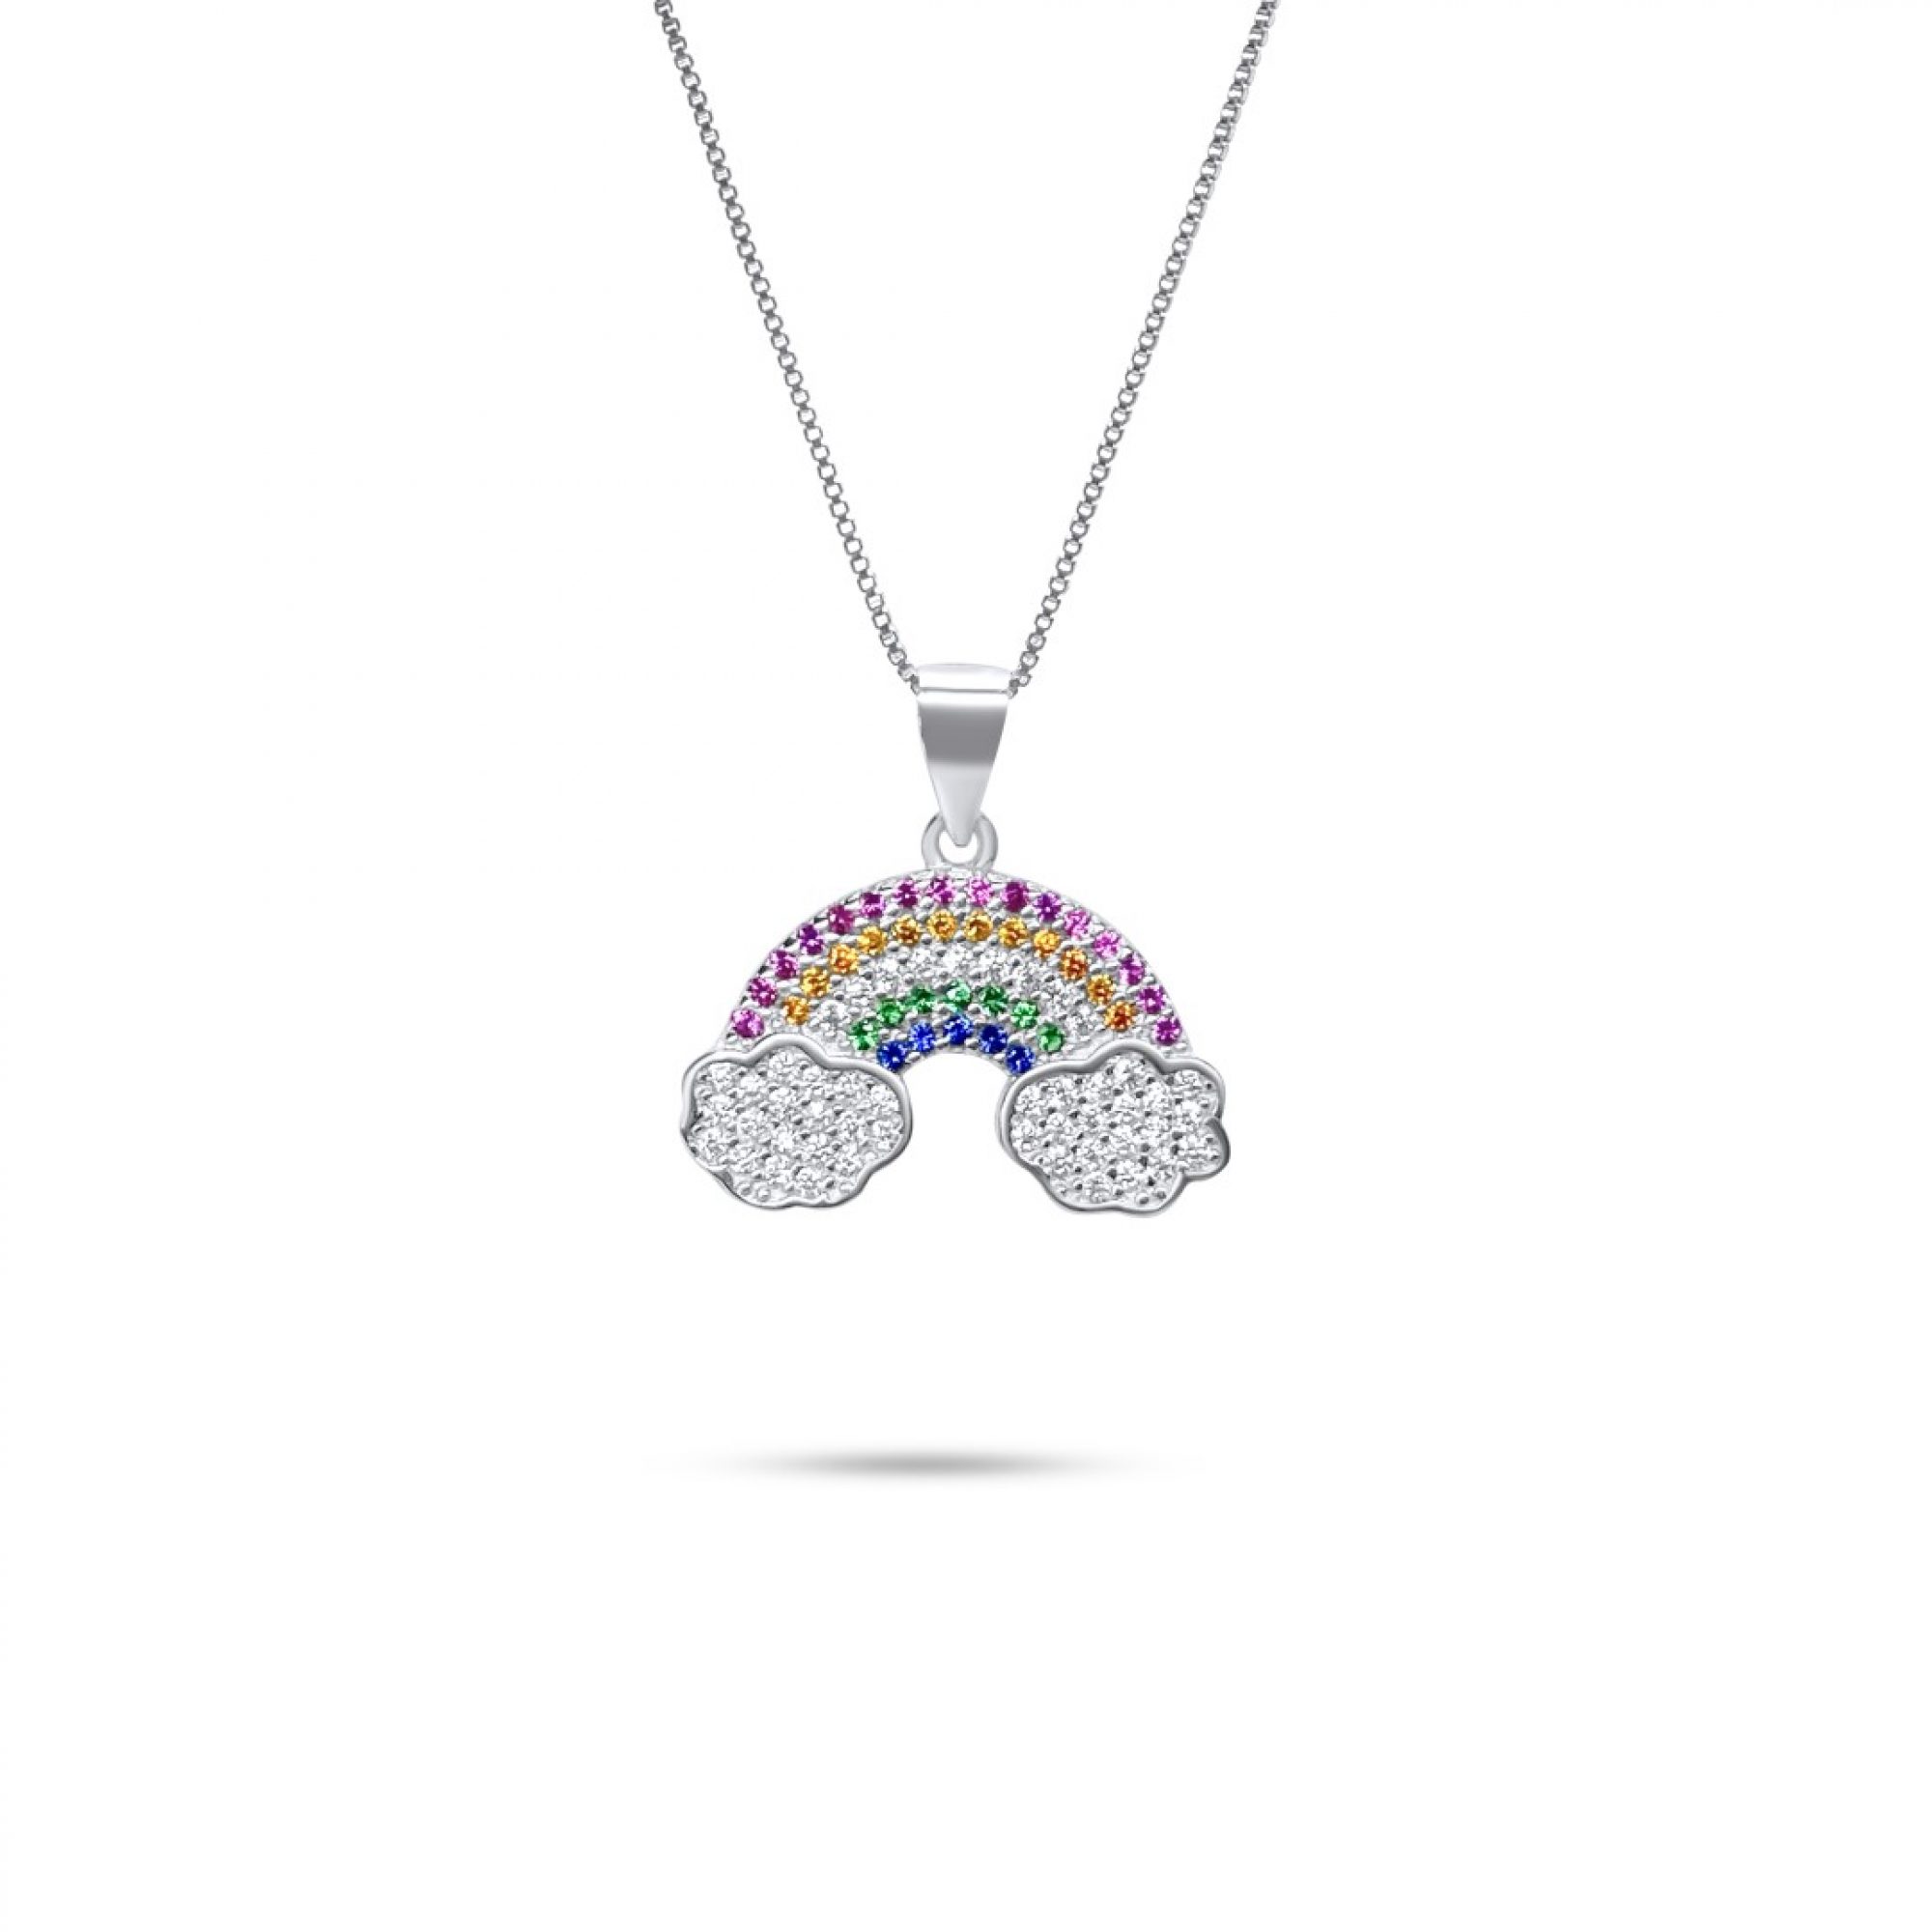 Rainbow necklace with zircon stones